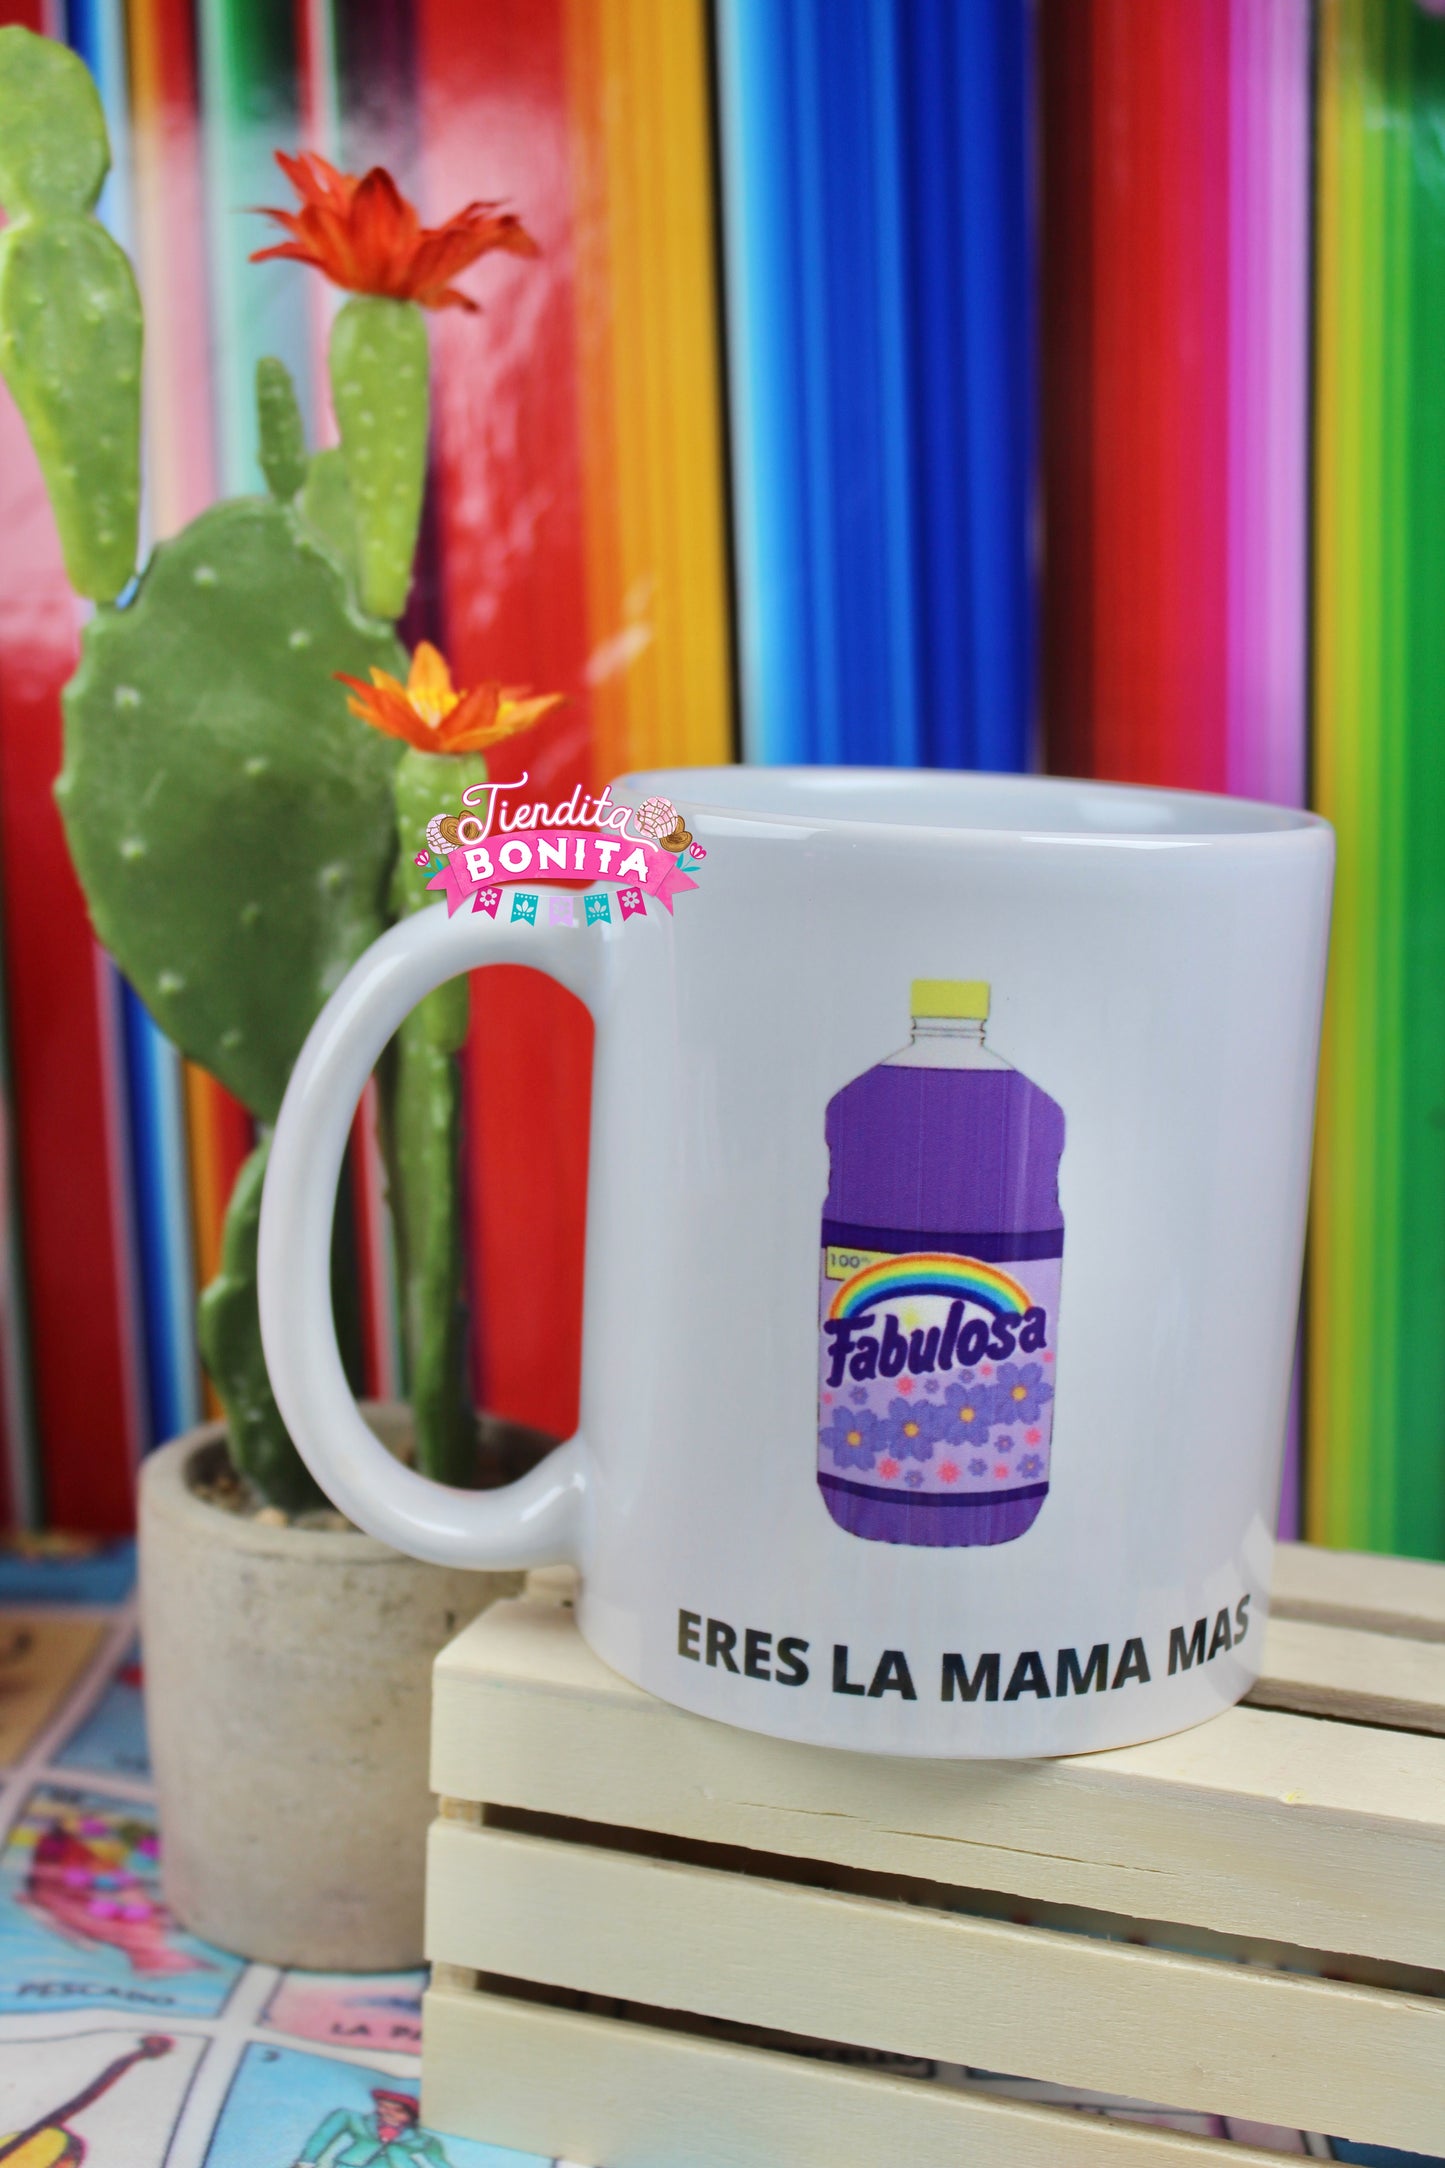 “ ERES LA MAMÁ MÁS FABULOSA” coffee mug